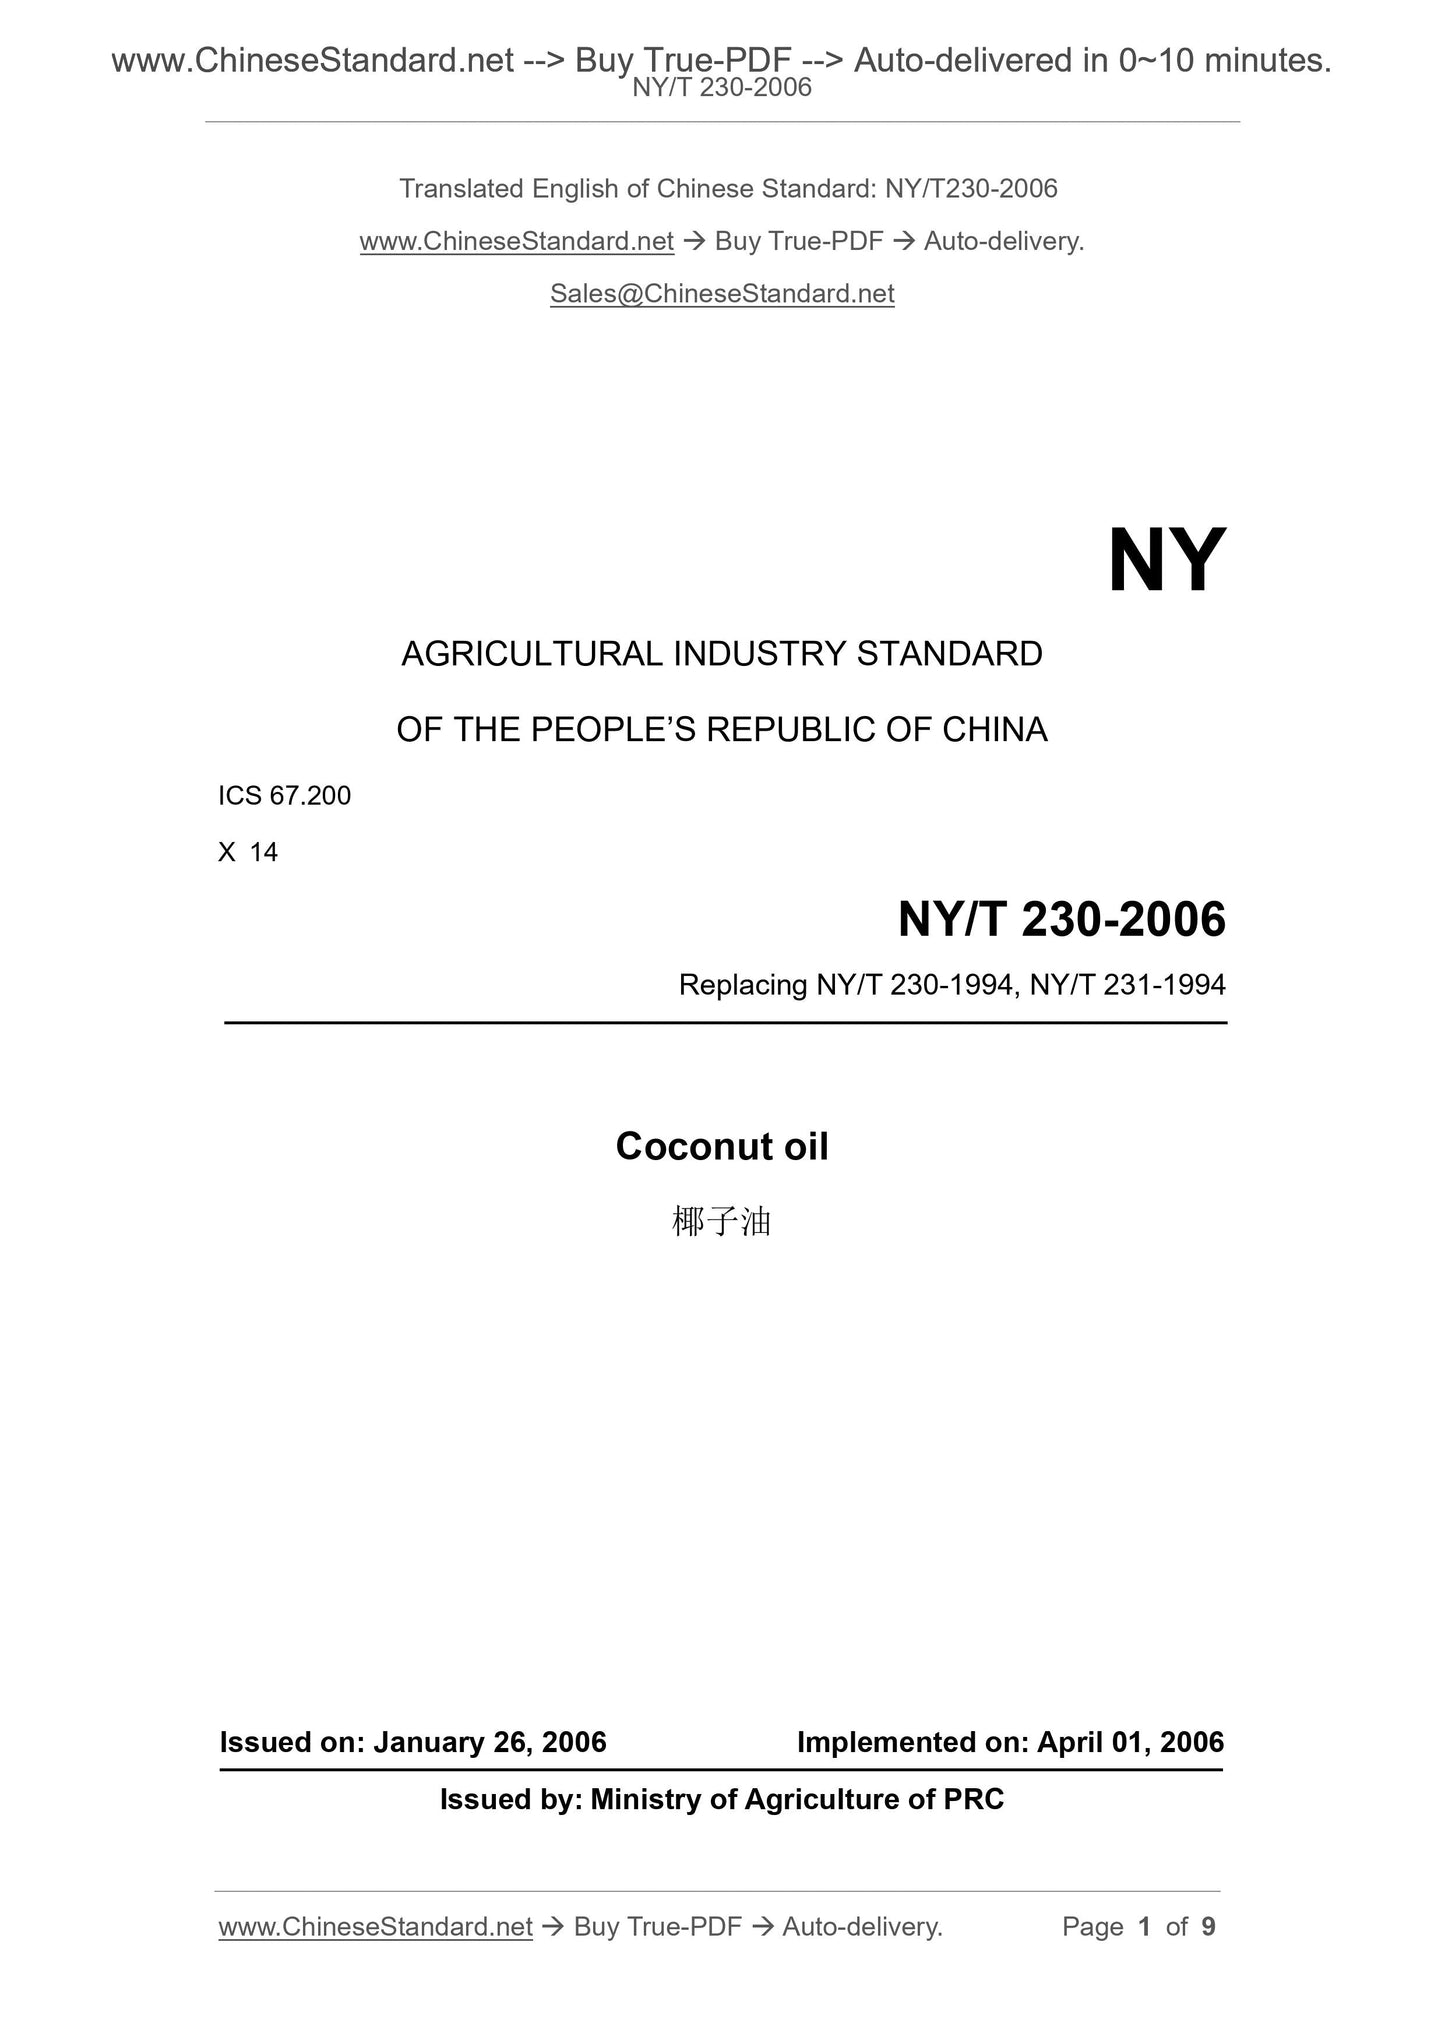 NY/T 230-2006 Page 1